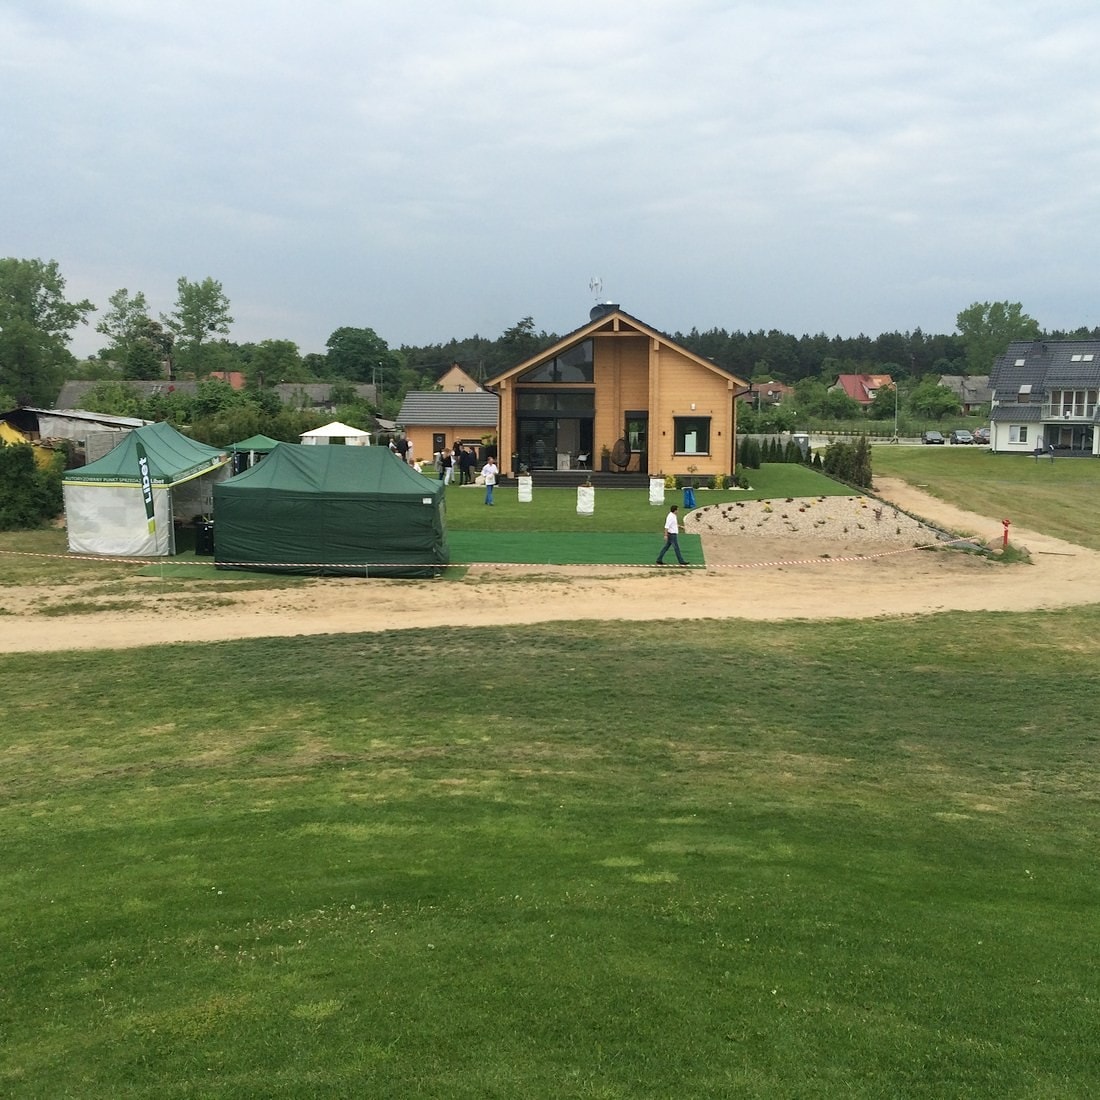 деревянный дом в гольф клубе